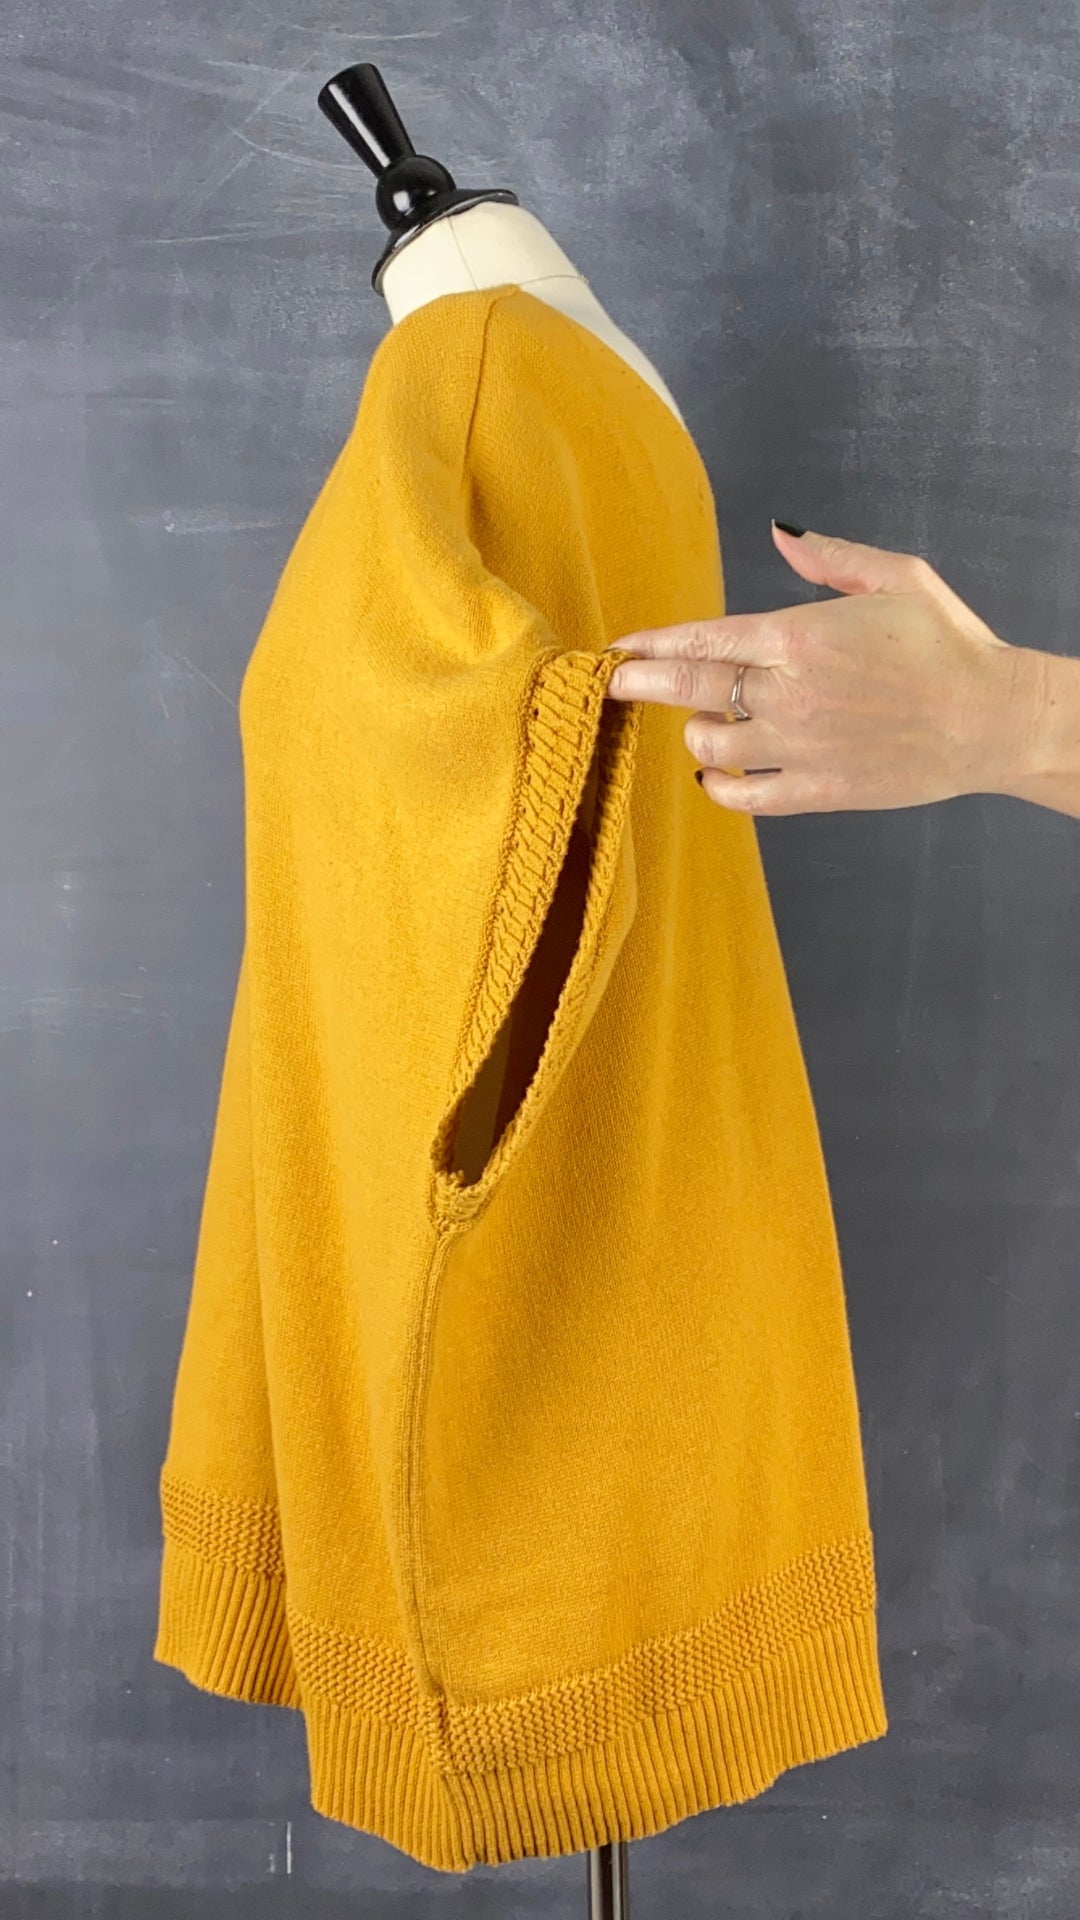 Chandail tricot manche cape ocre Joie, taille 3X. Vue de côté, manche relevée.